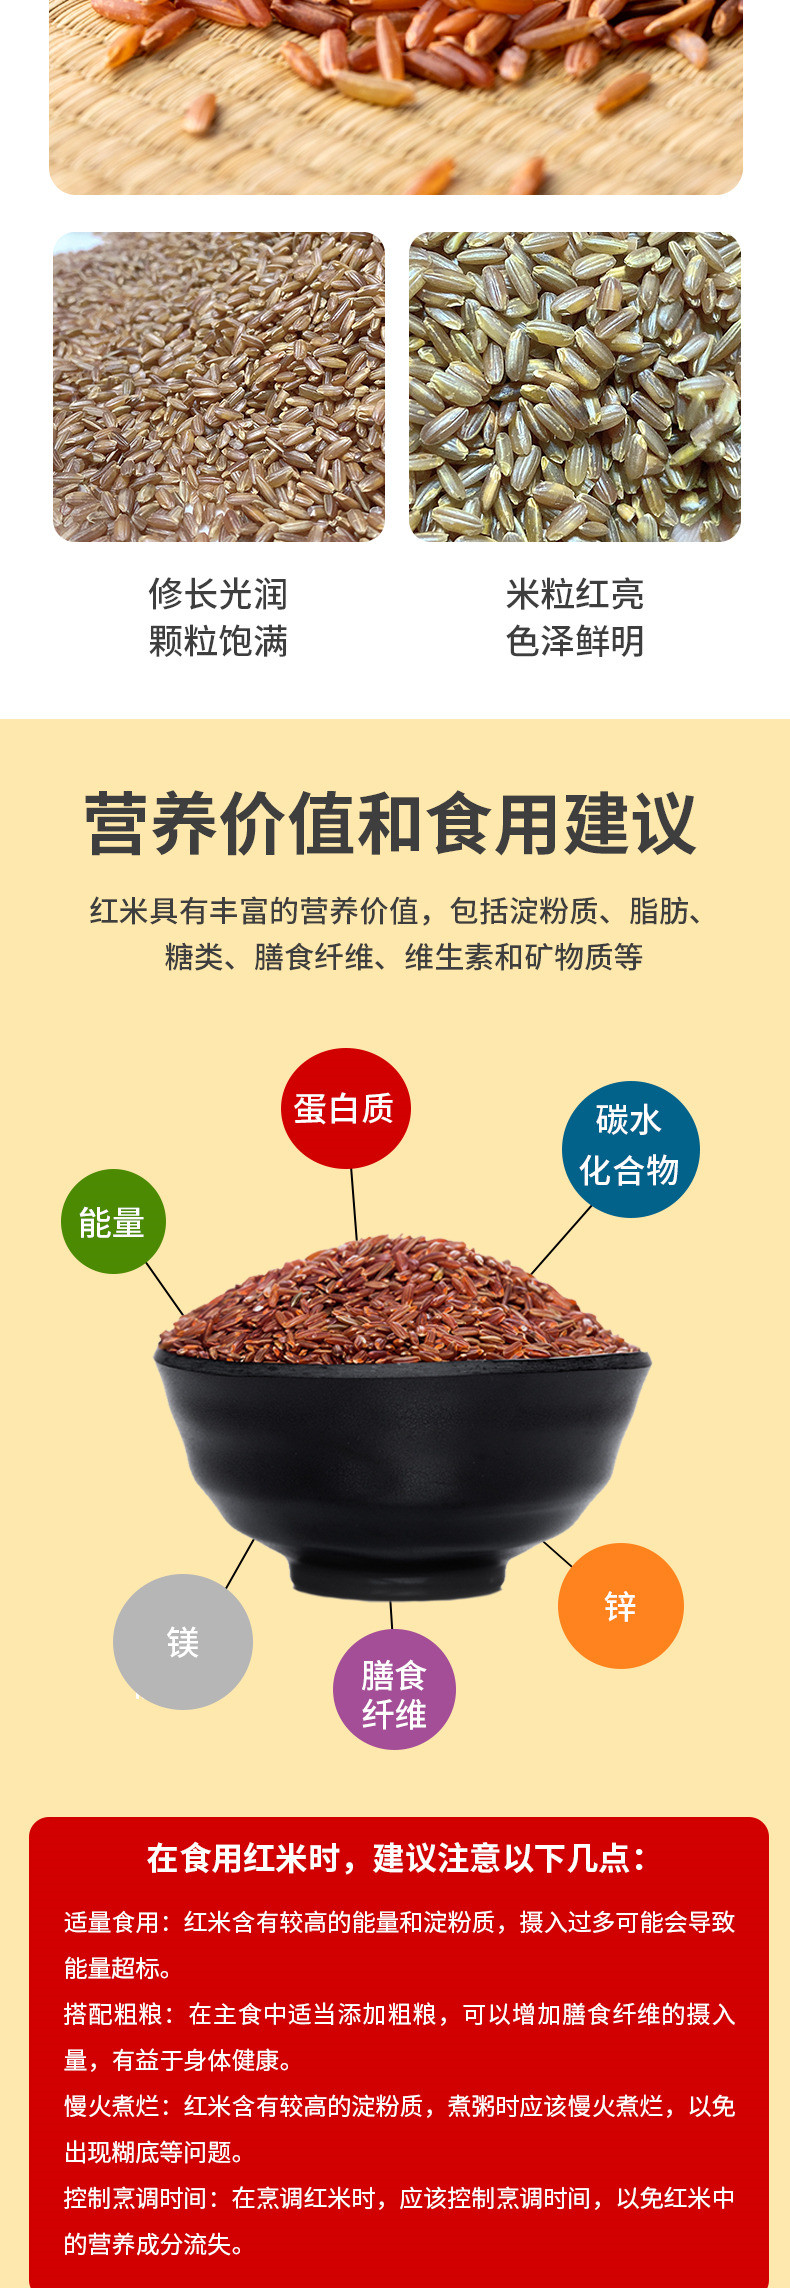 巢湖旺 红糙米 营养粥米 野生红米2.5kg